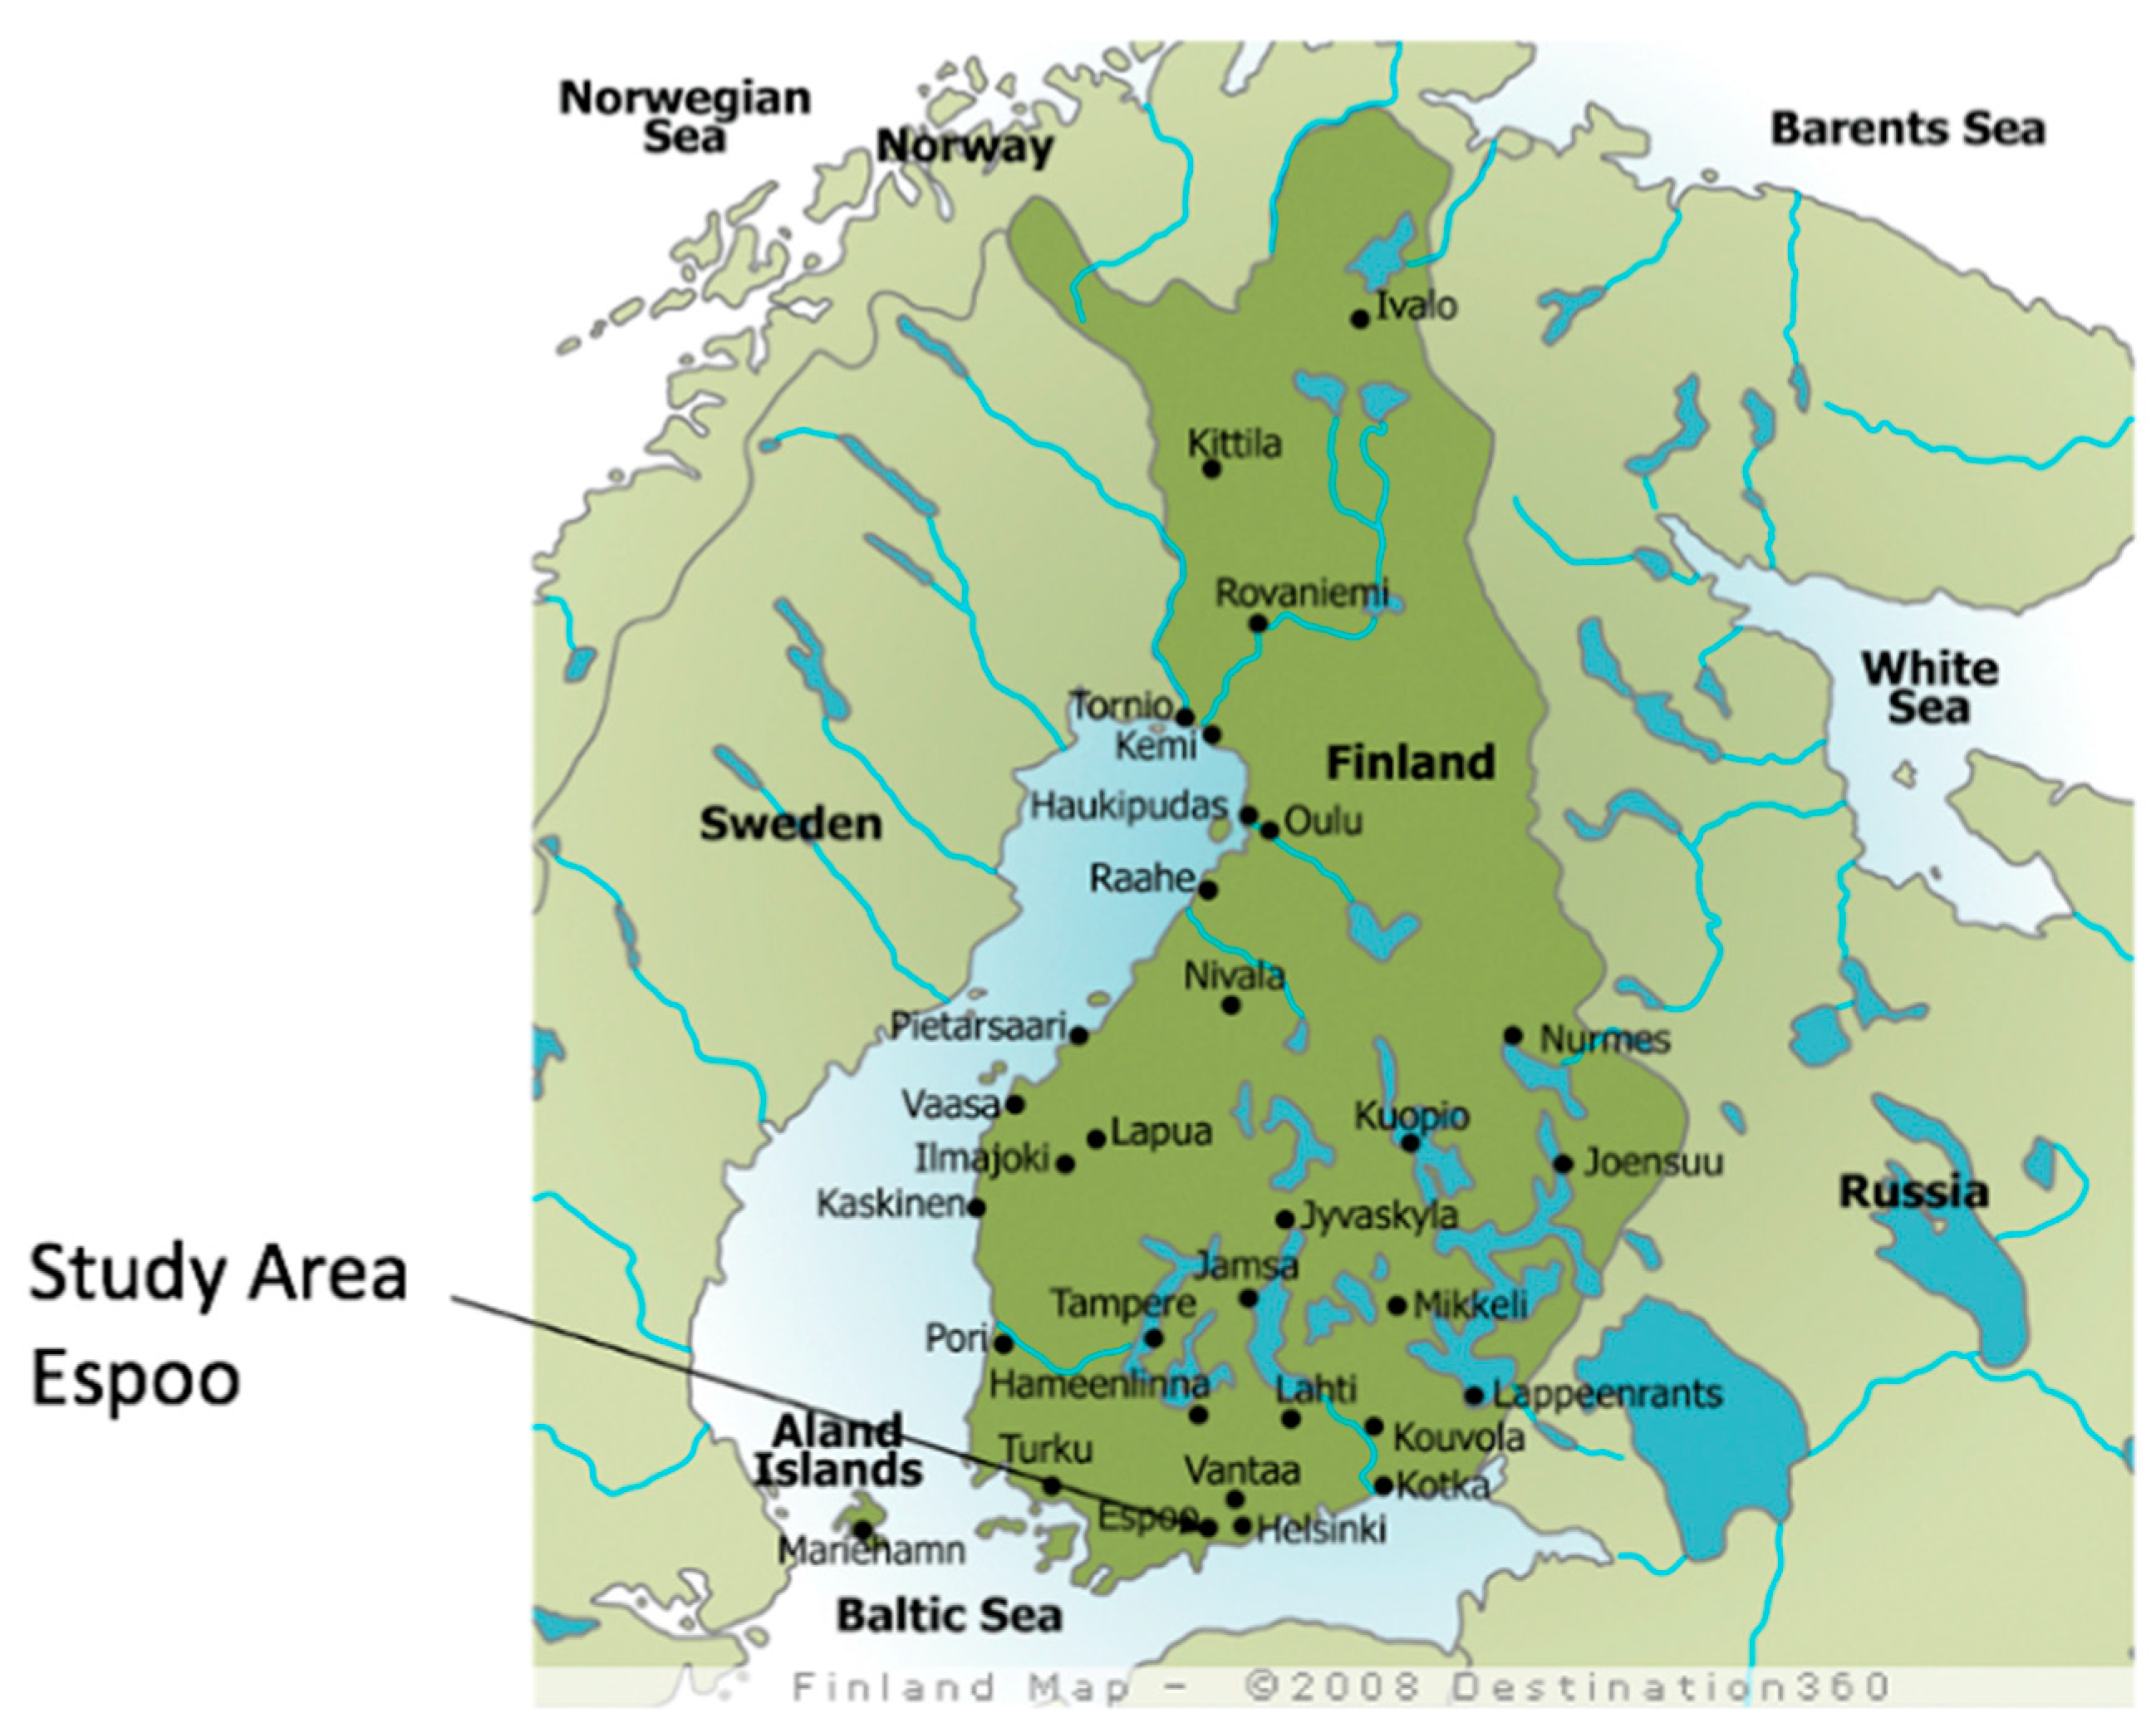 карта финляндия достопримечательности